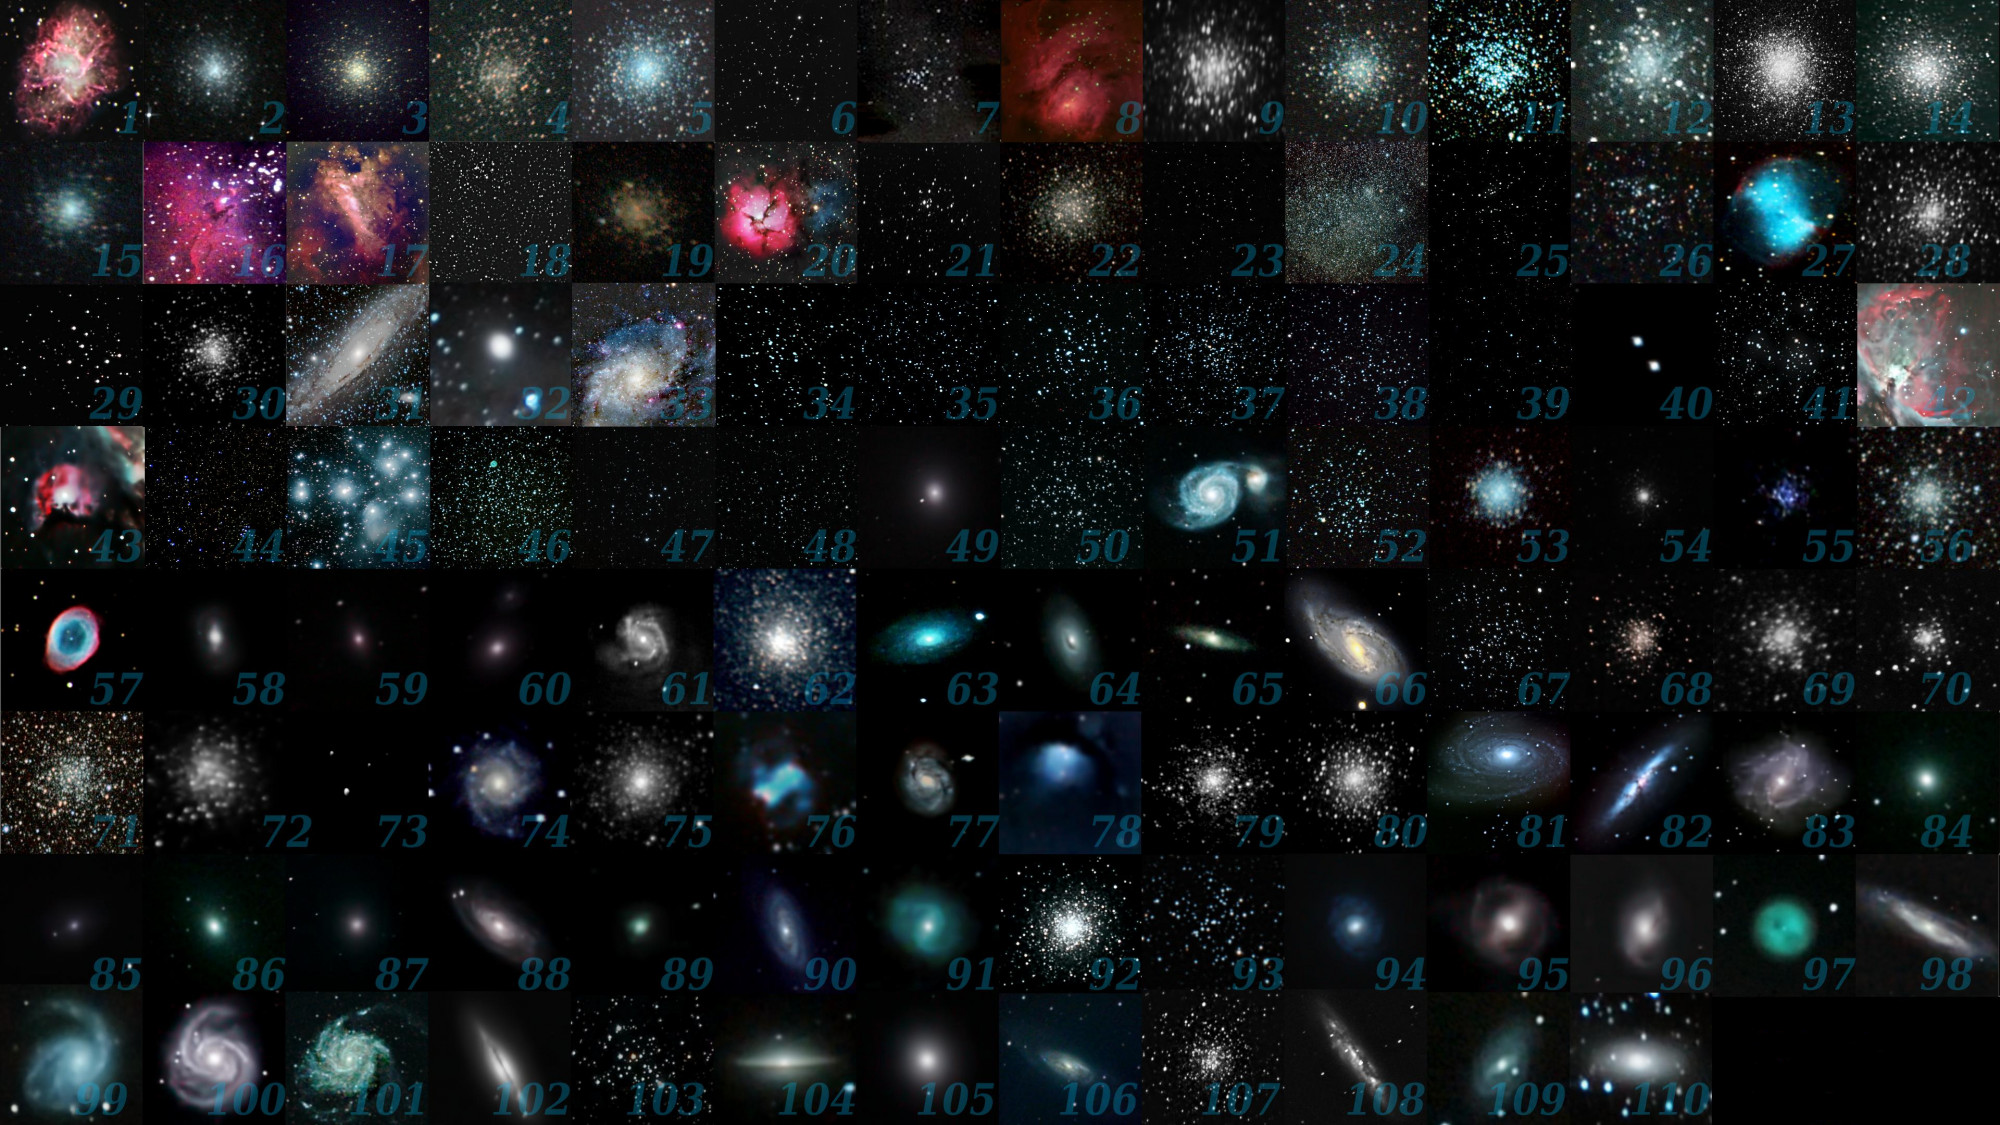 Az eredeti katalógusban szereplő 110 Messier-objektum